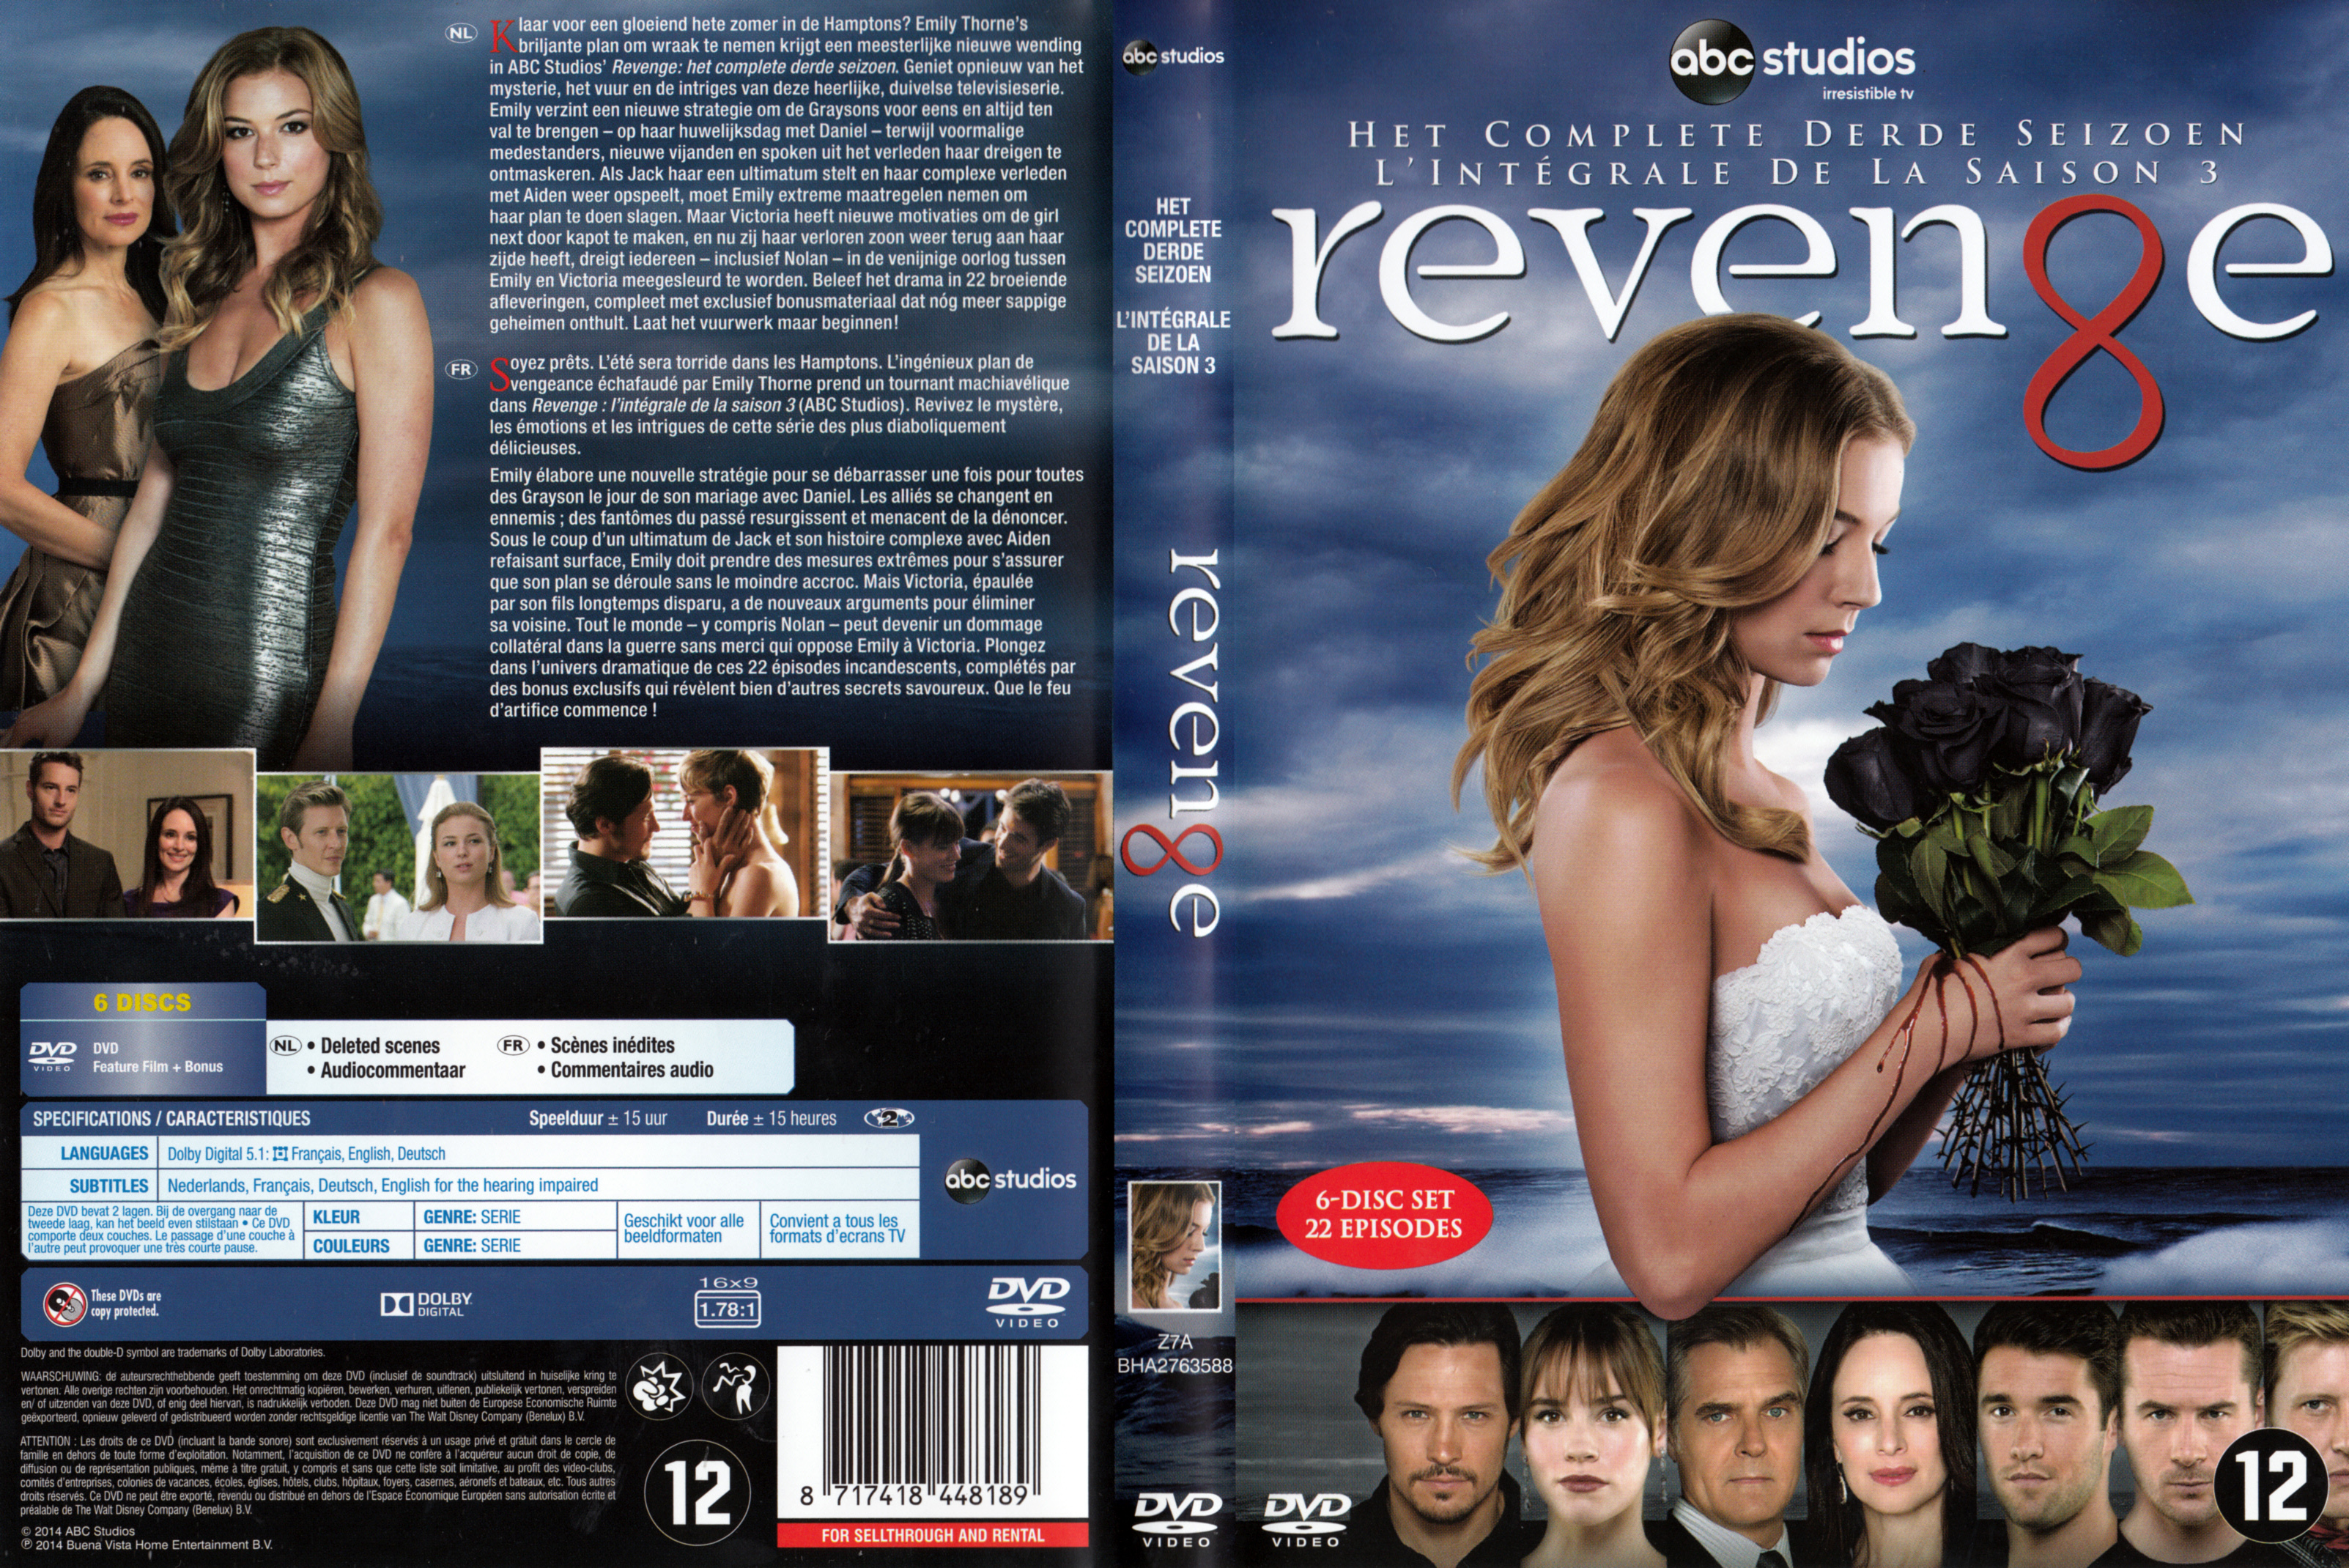 Jaquette DVD Revenge Saison 3